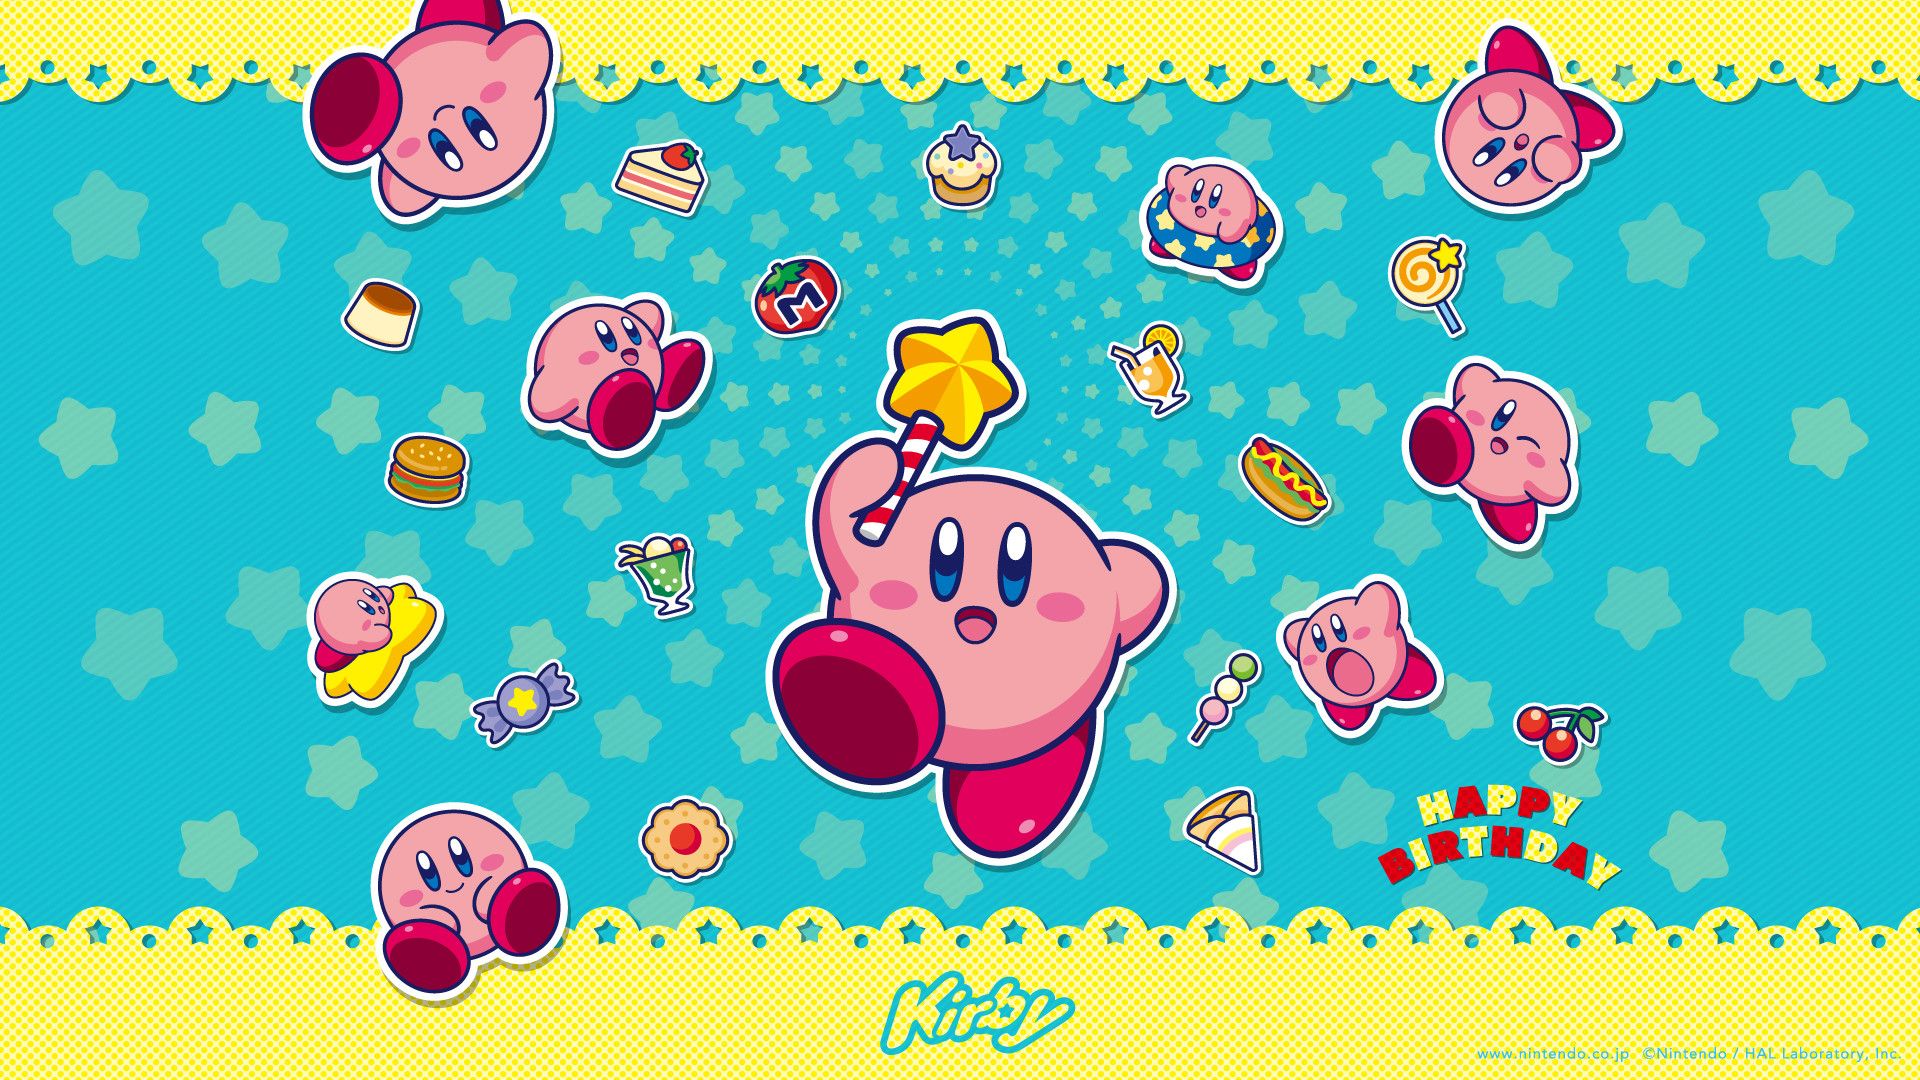 Bạn đang tìm kiếm các bức ảnh nền Kirby để cập nhật cho thiết bị của mình? Hãy lựa chọn một tấm nền đầy màu sắc và sinh động trong bộ sưu tập các ảnh nền Kirby hoàn hảo này!